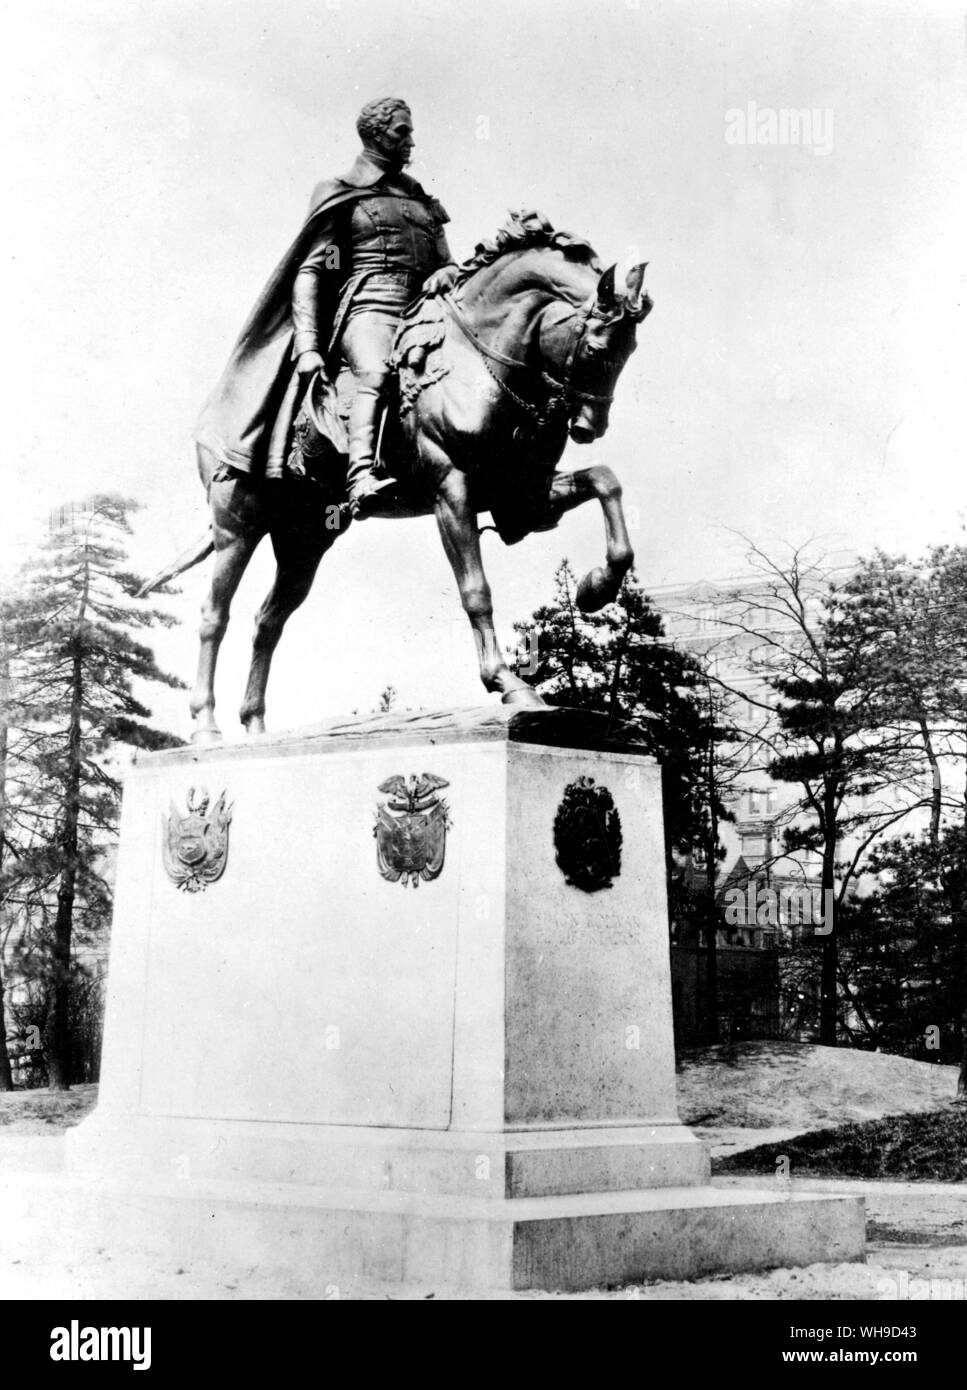 Central Park, Nueva York, EE.UU.: Estatua de Simón Bolívar (1783-1830). América del Sur, el líder nacionalista de los ejércitos revolucionarios, conocido como el Libertador. Nació en Venezuela. Foto de stock